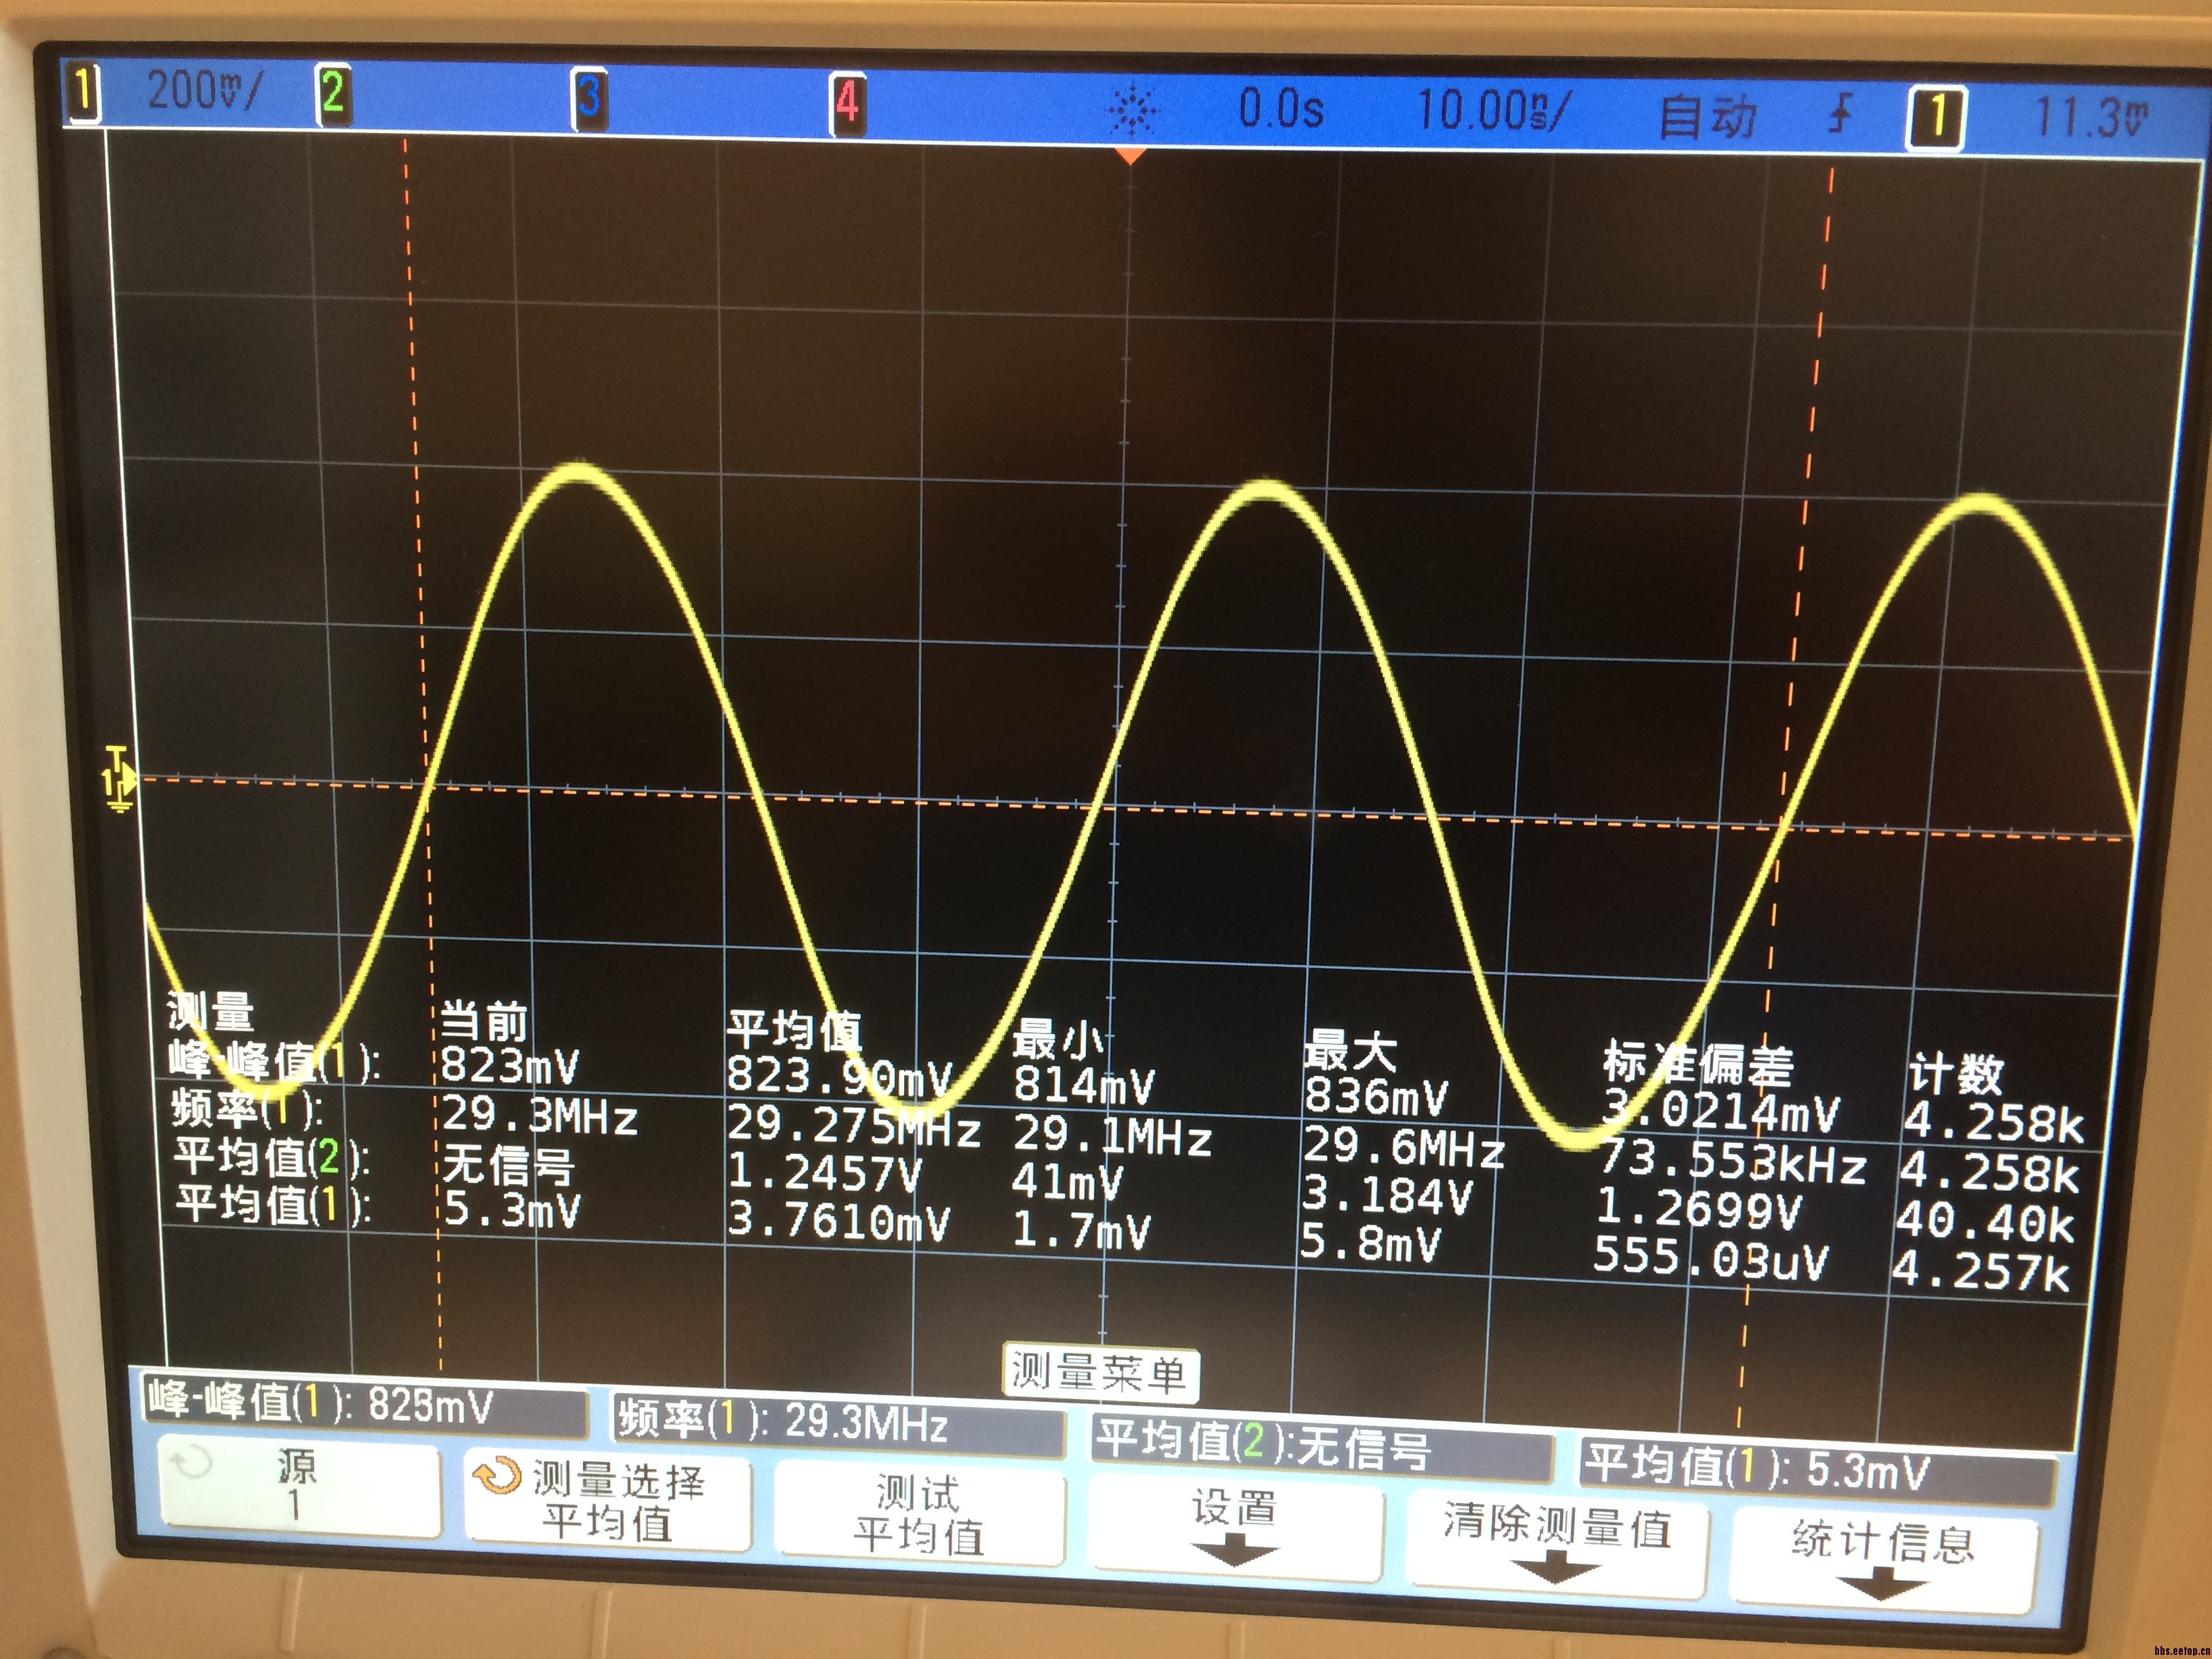 这个是dac输出差分信号后,经过巴伦转为单端信号,再经过200m的滤波